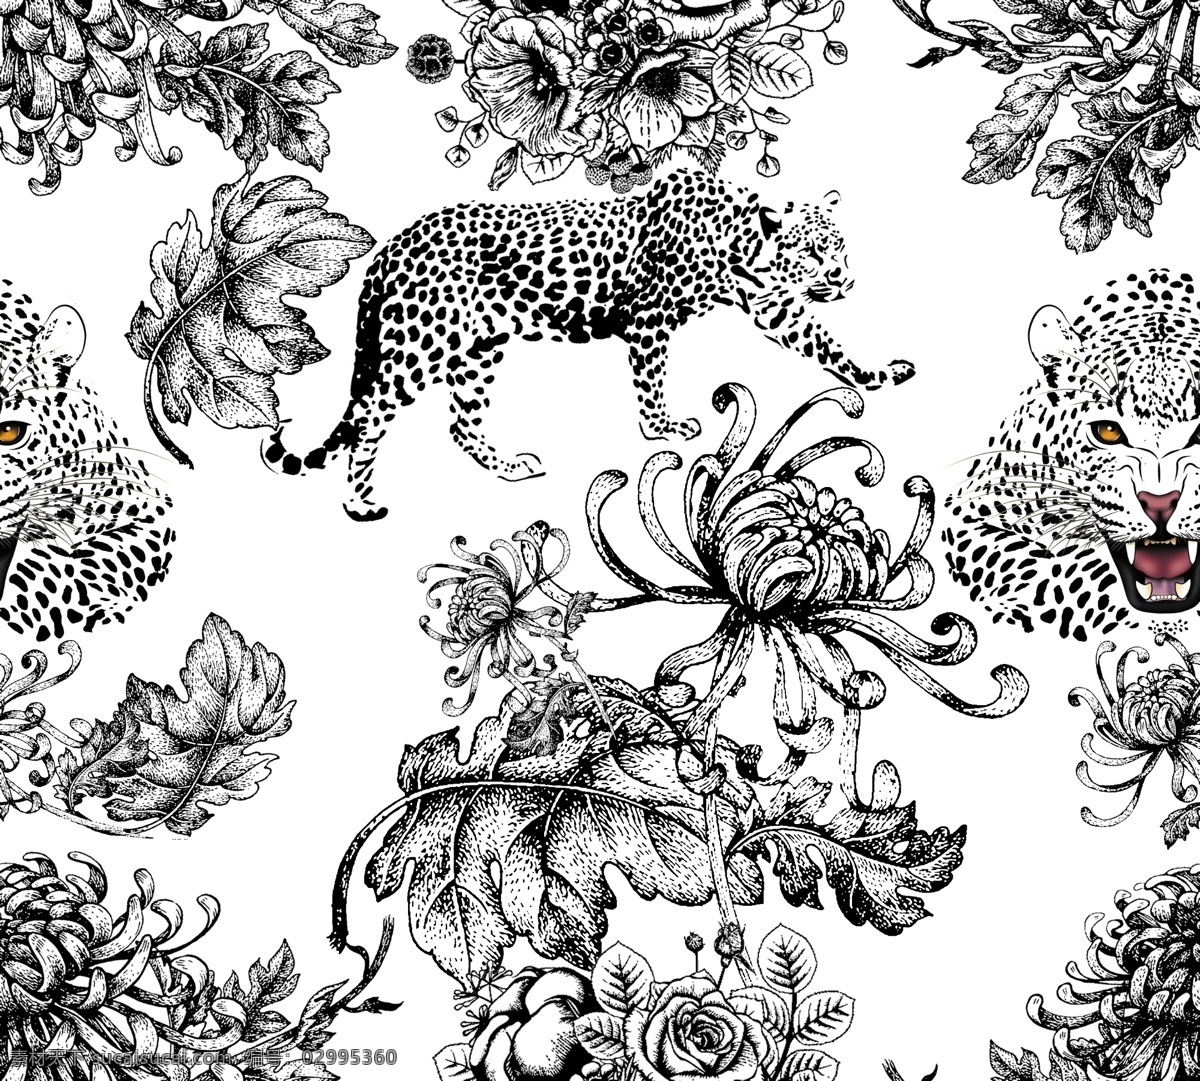 简笔花 简笔豹子 手绘图 手绘花 叶子 叶子花素材 底纹边框 抽象底纹